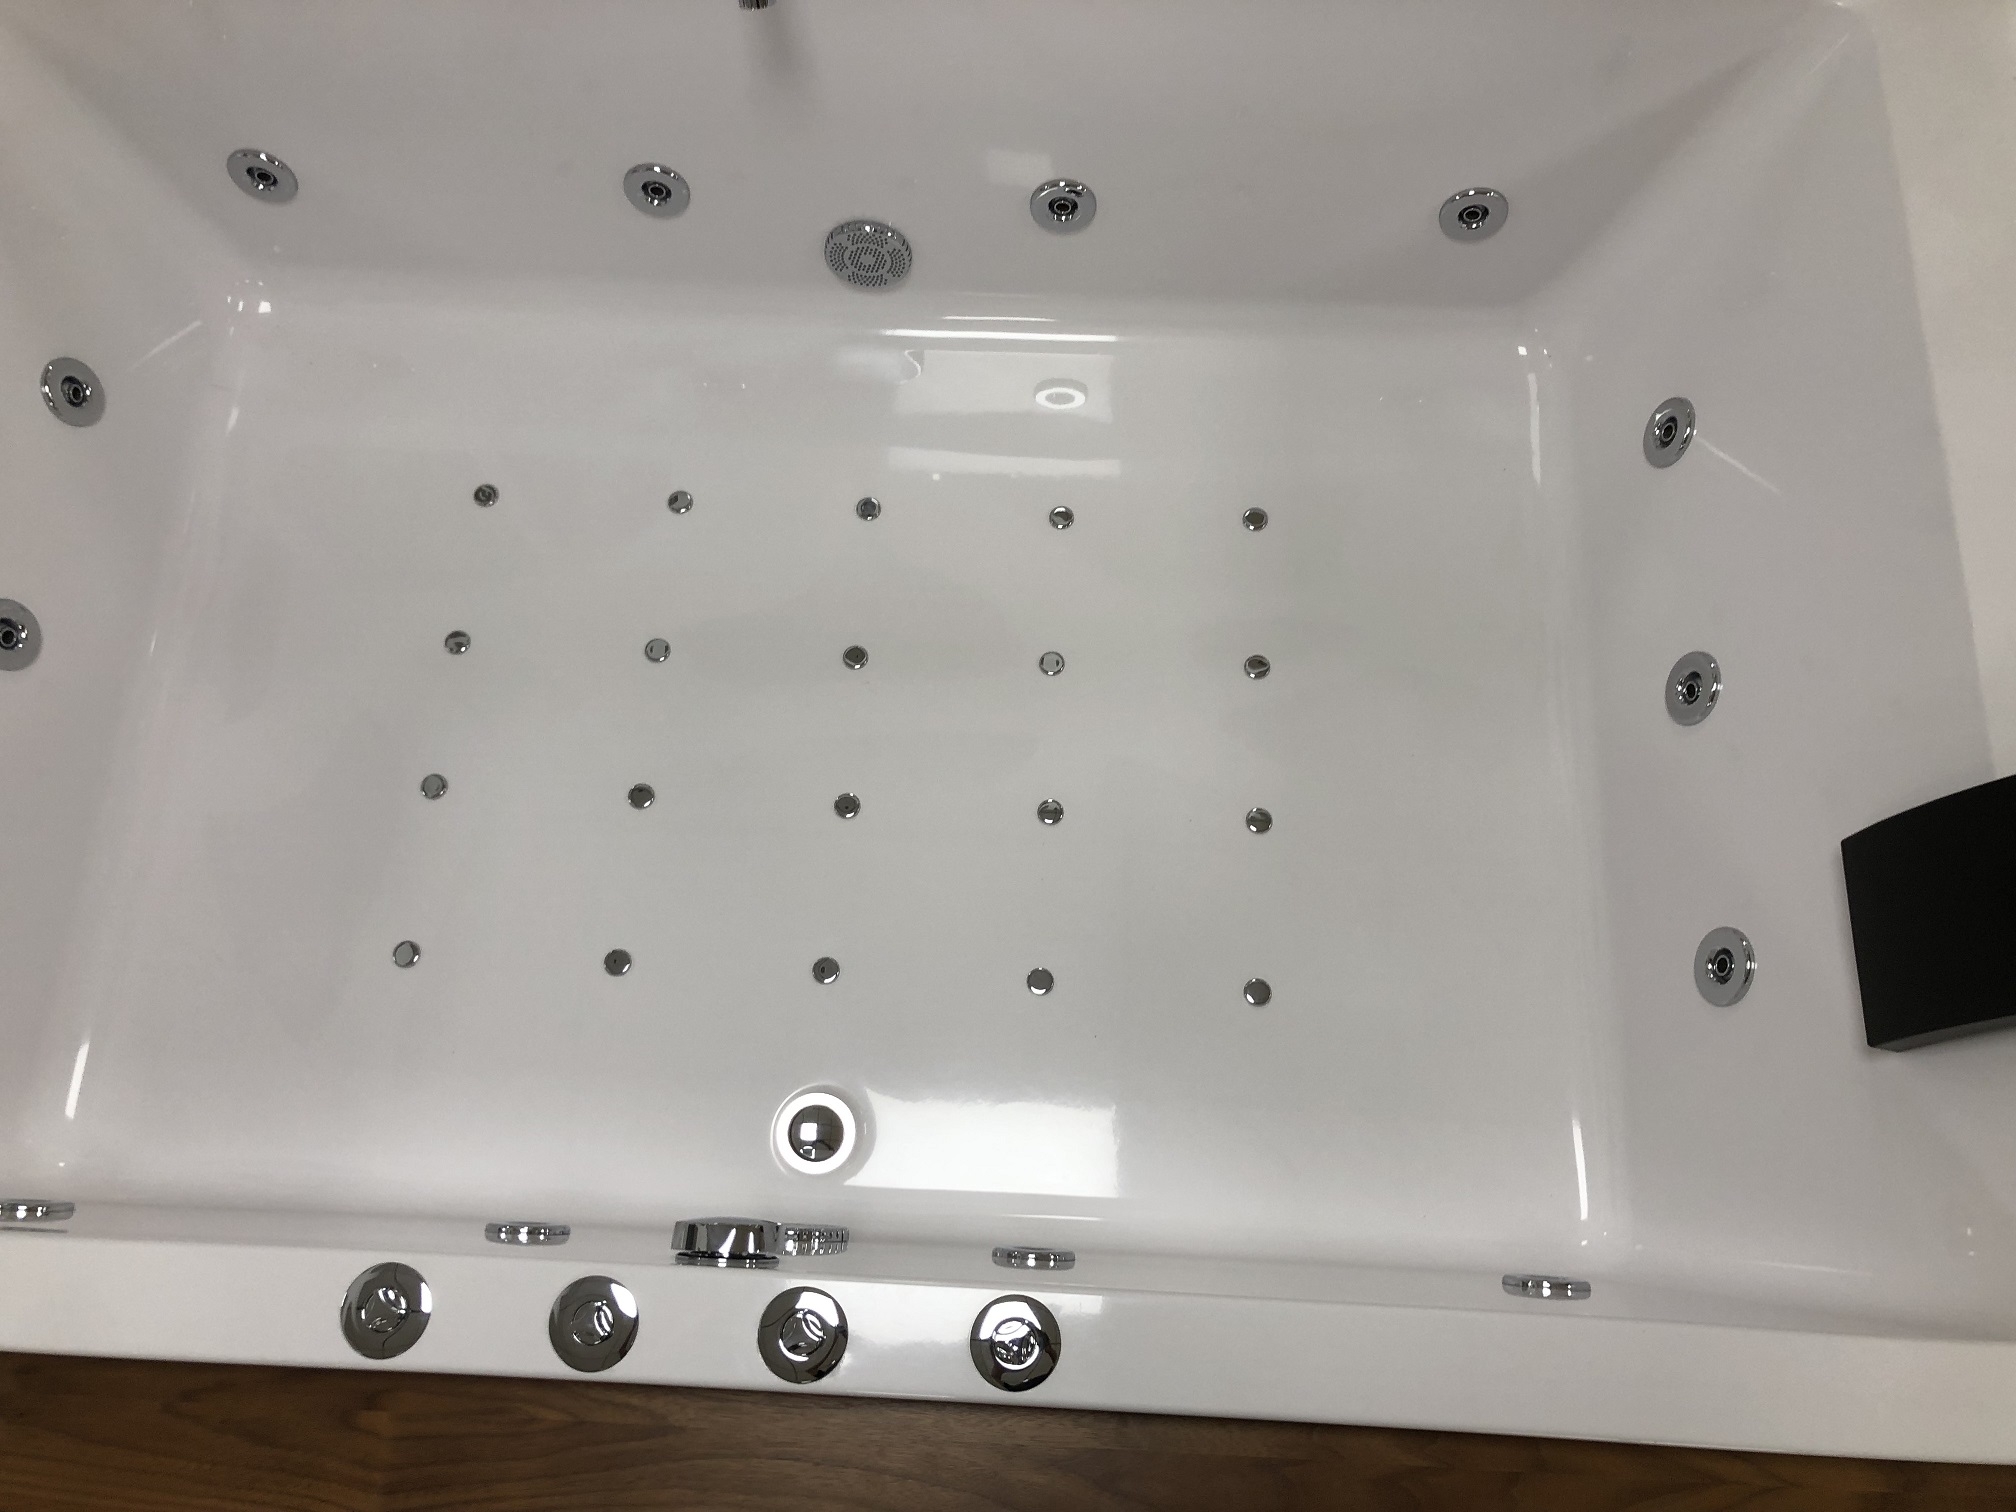 Bañera de hidromasaje de 71 x 47 pulgadas para 2 personas, bañera de  hidromasaje, bañera independiente rectangular con panel de computadora,  burbuja